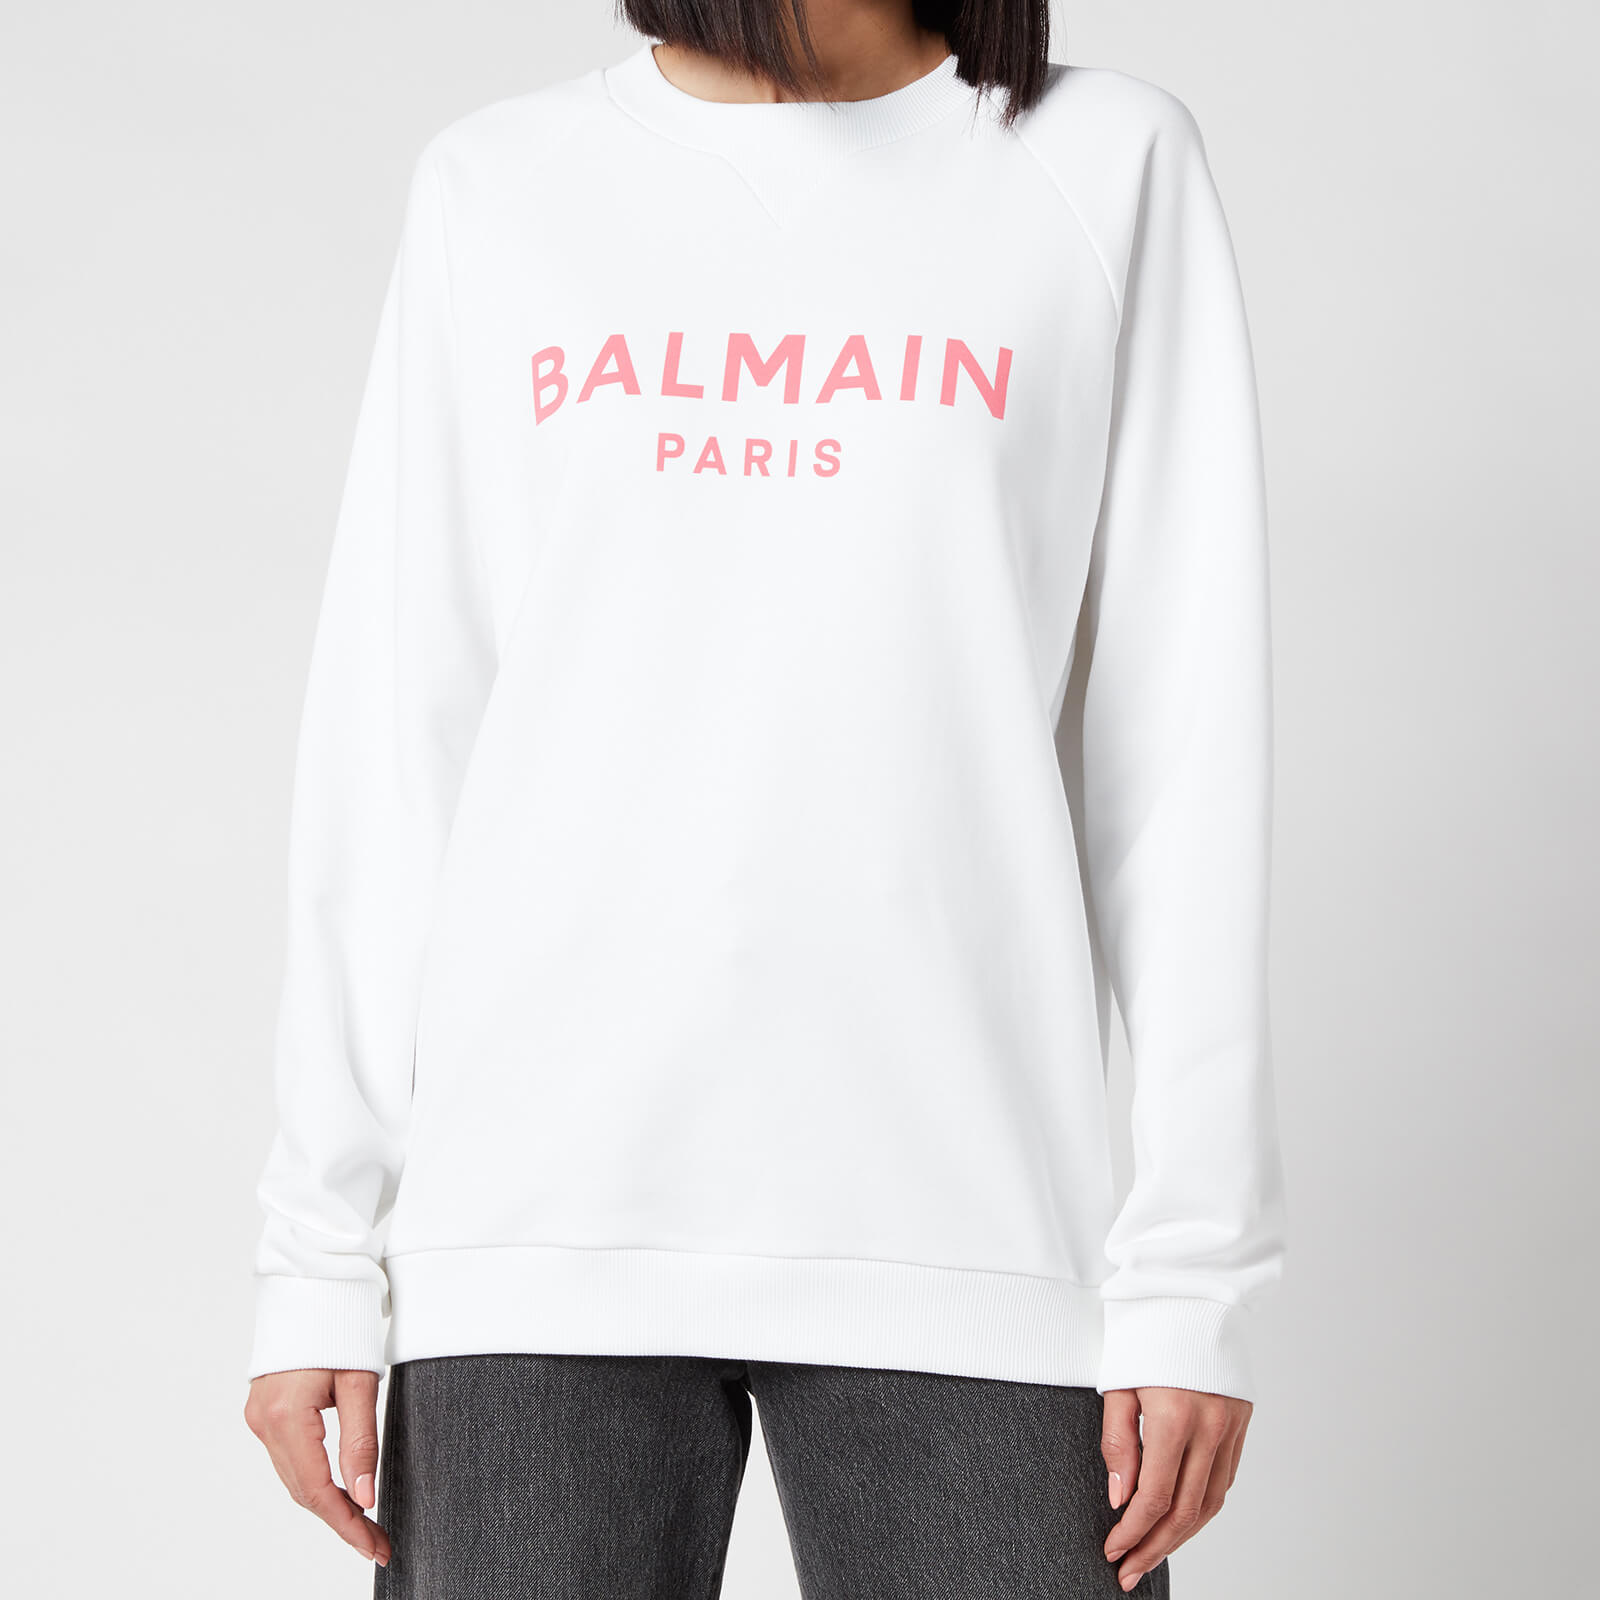 Balmain Women's Printed Logo Sweatshirt - Blanc/Rose - S